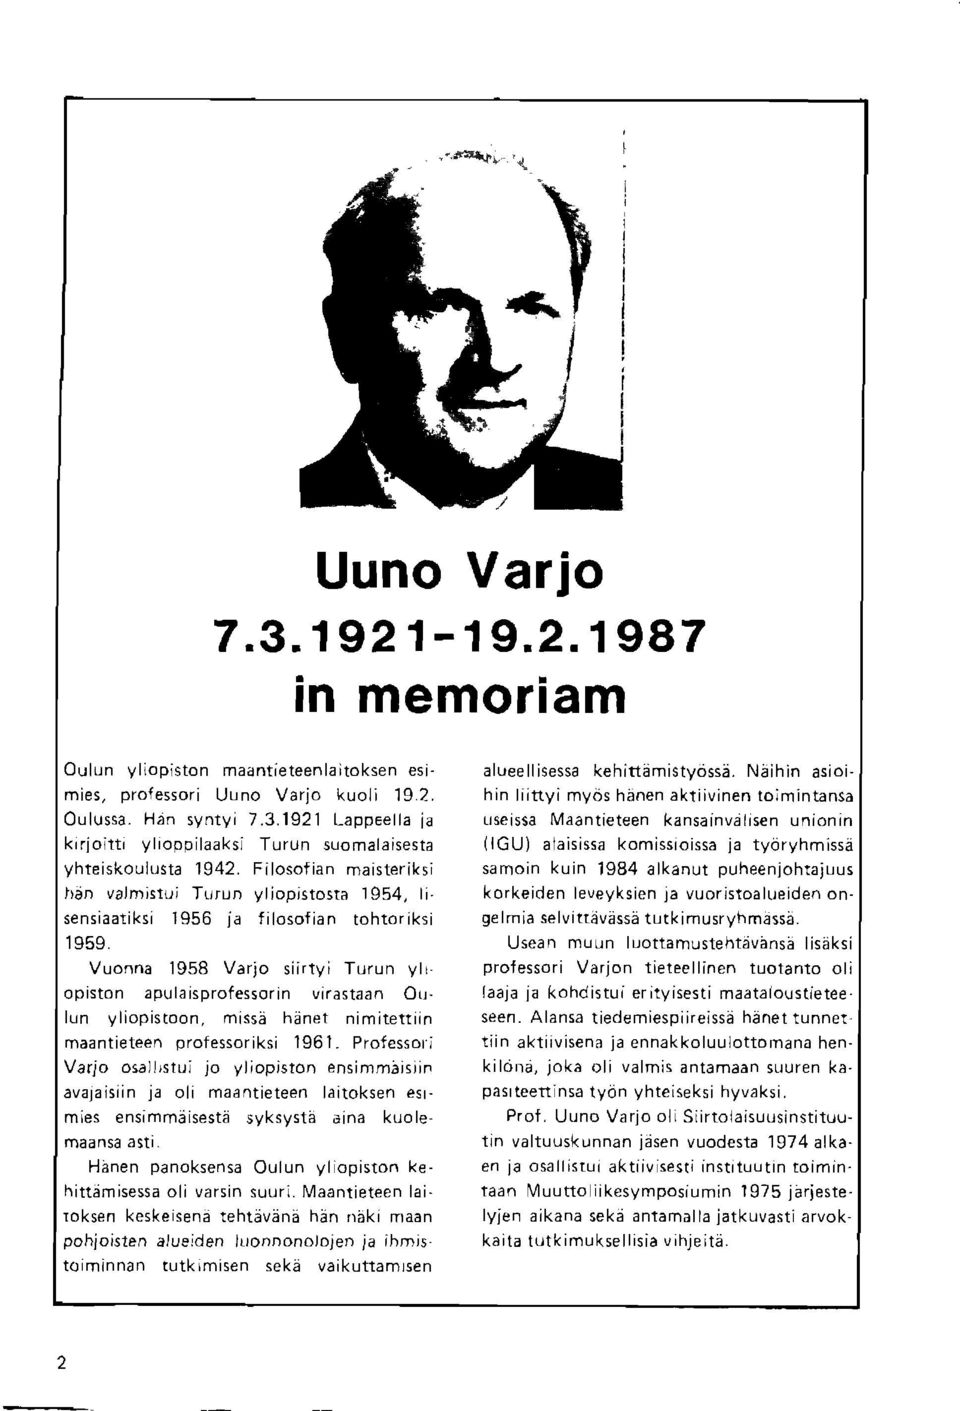 Vuonna 1958 Varjo siirtyi Turun ylr opiston ap\r la rsprofessor in virastaan Oulun yl;opistoon.nrss; hdnel nimitet!in maantieteen professor iksi 1961. Professori Vario osa.,stj. jo yl;opj(too enqirn.